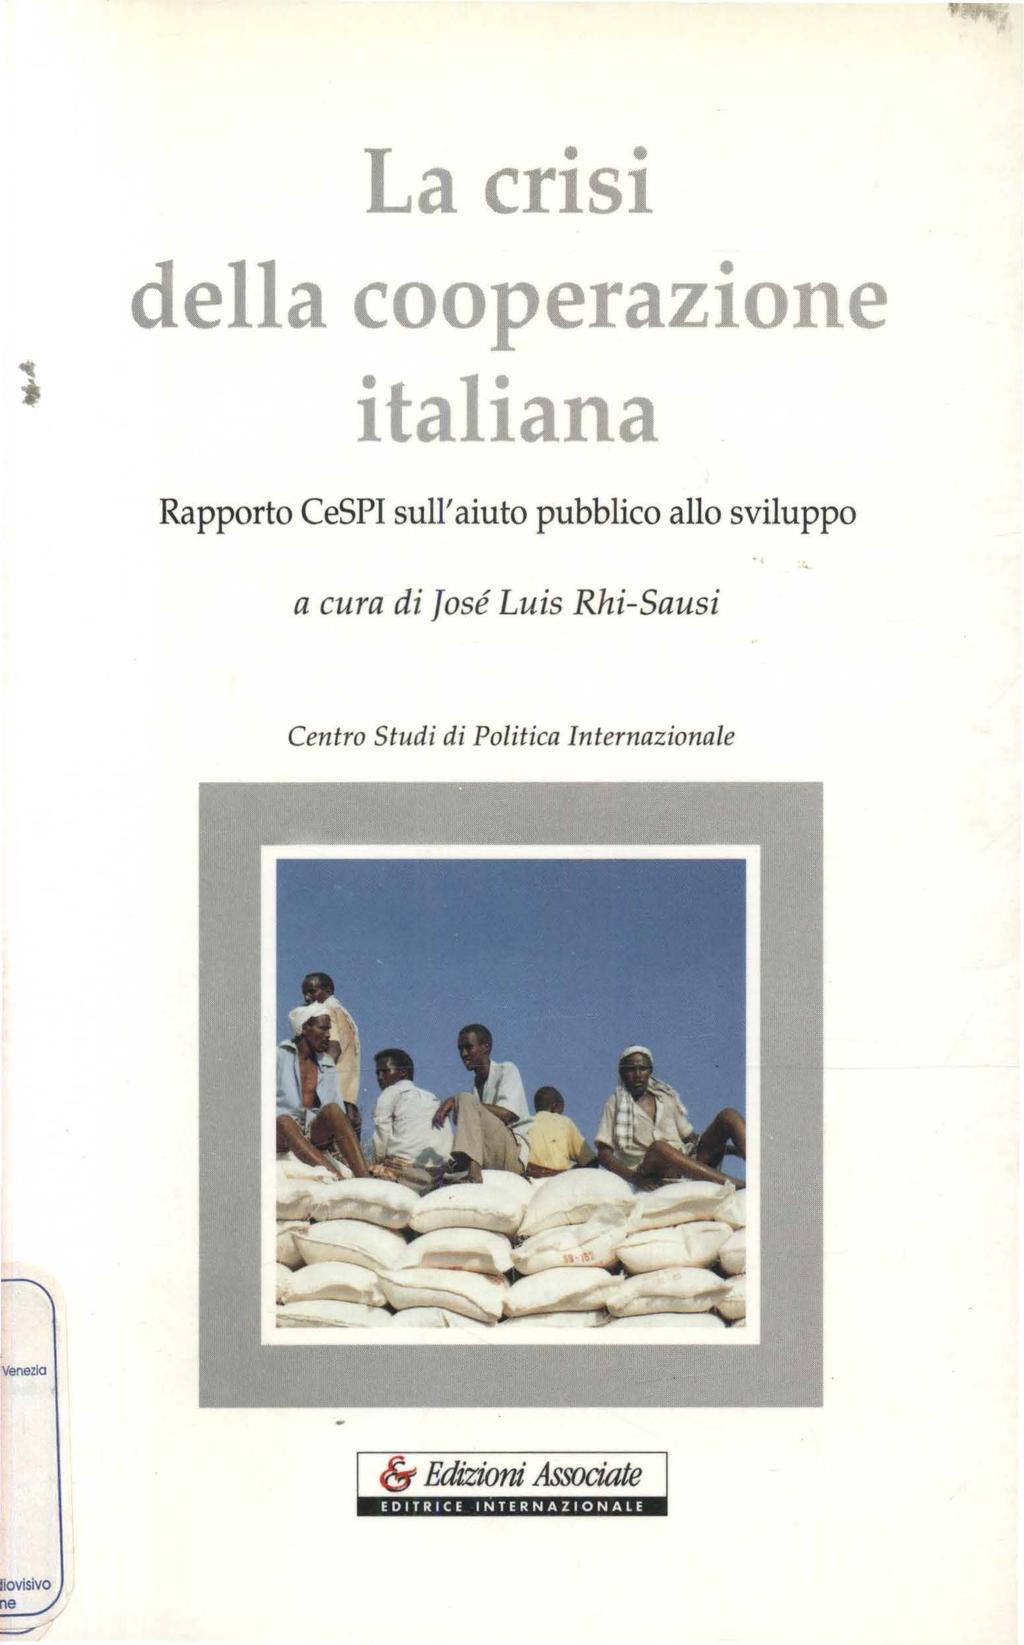 La crisi della cooperazione italiana Rapporto CeSPI sull'aiuto pubblico allo sviluppo